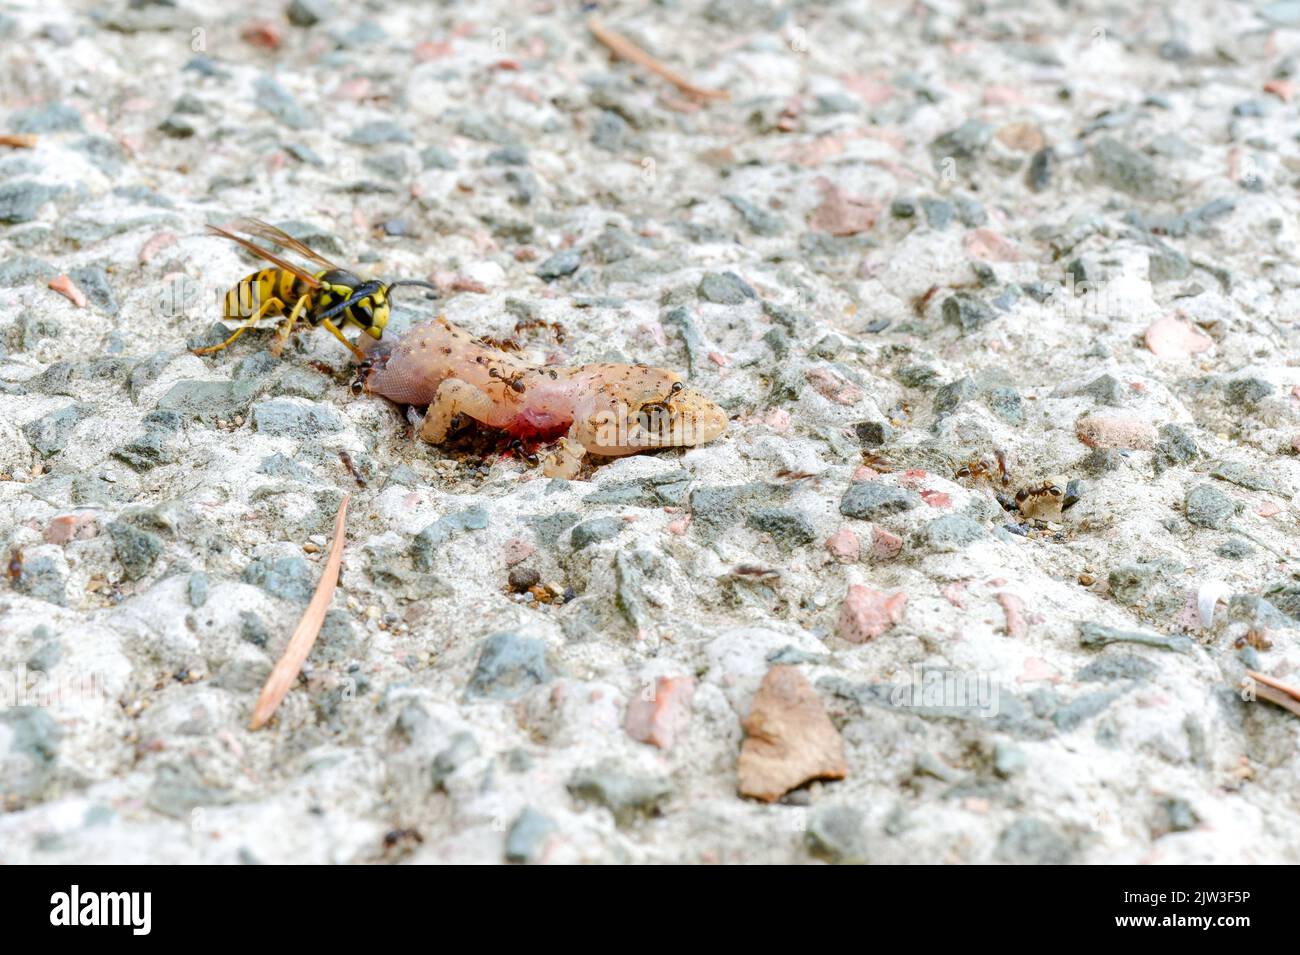 Ameisen und Bienen fressen toten Eidechsenkörper auf dem Boden. Stockfoto